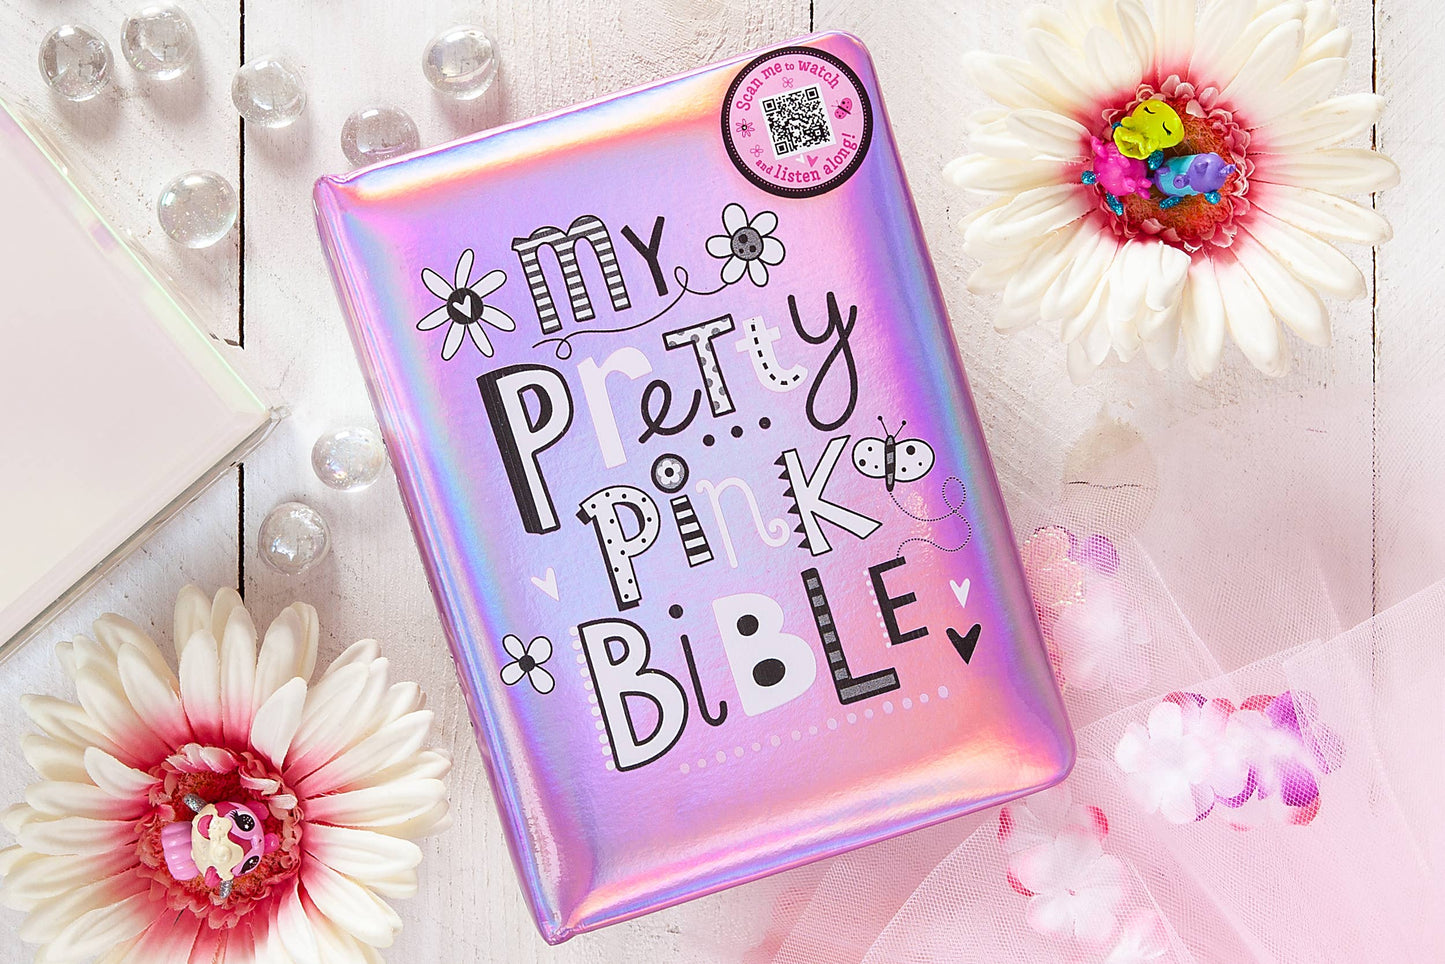 My Pretty Pink Bible